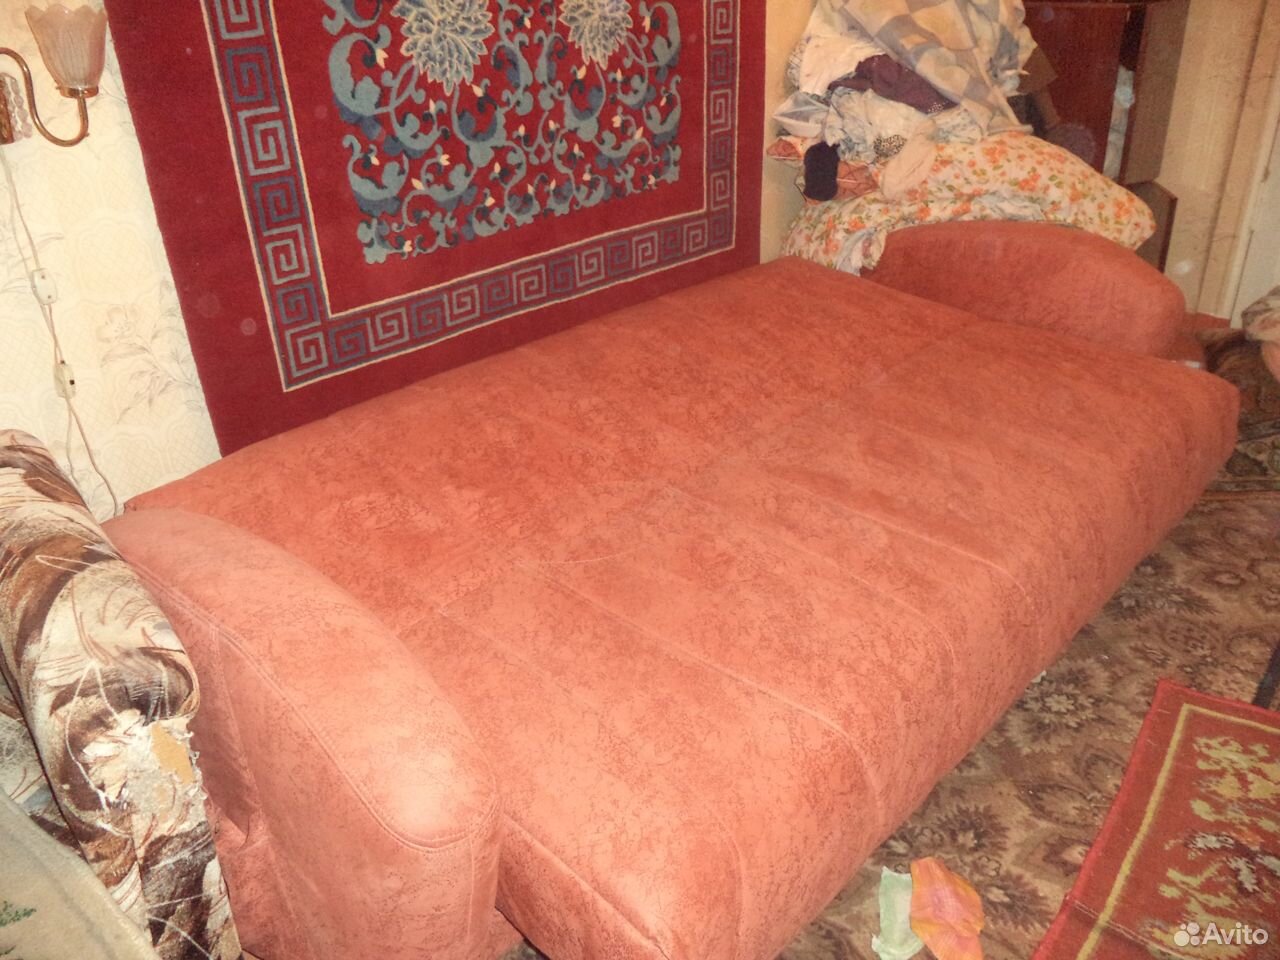  Диван (диван- кровать) новый  89675090961 купить 3